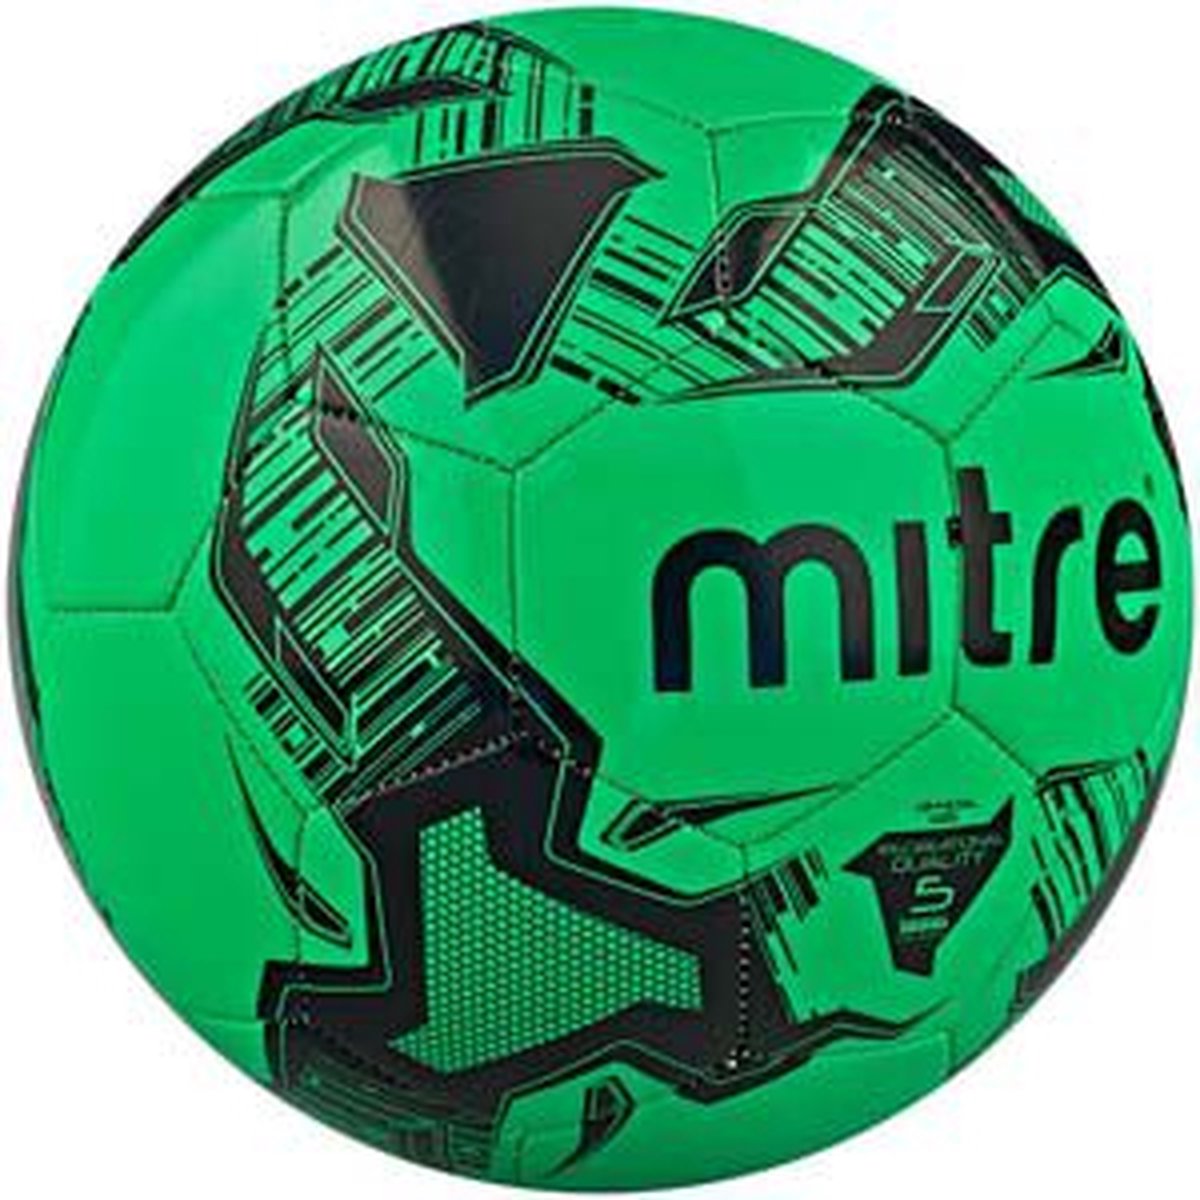 Mitre Ace Voetbal - Recreatie voetbal - Maat 5- Groen